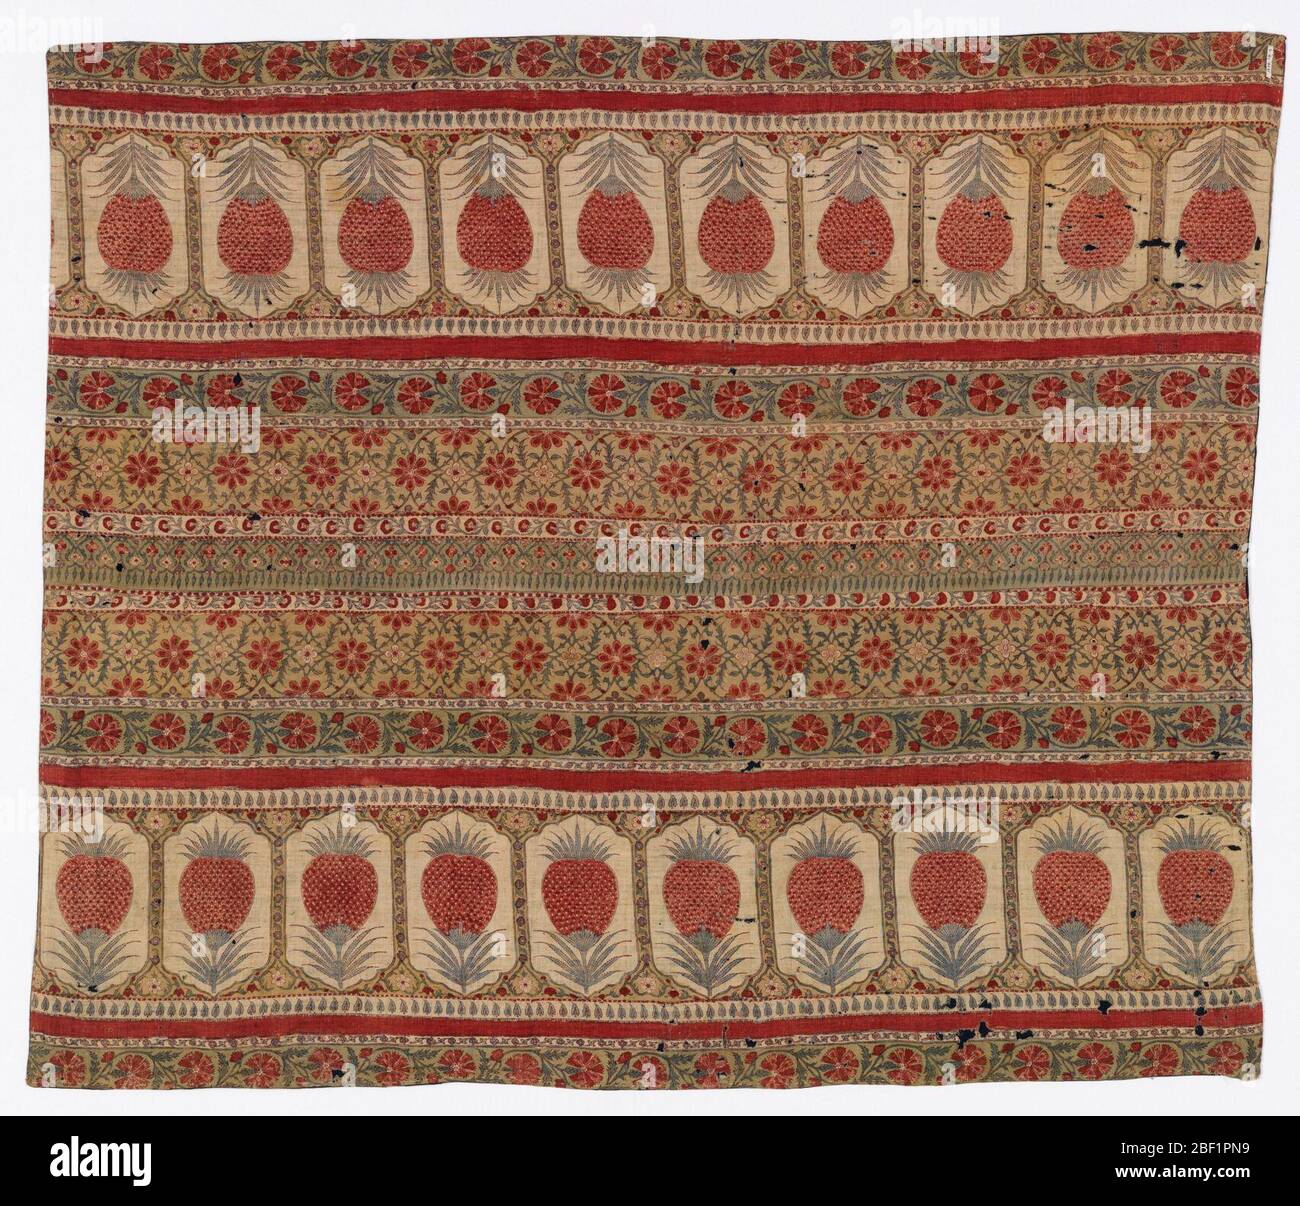 Textil. Cover gedruckt in einem Design aus Blumen und Ananas in Rot, Blau und Tans. Zwei Streifen zusammengenäht Form Abdeckung. Stockfoto